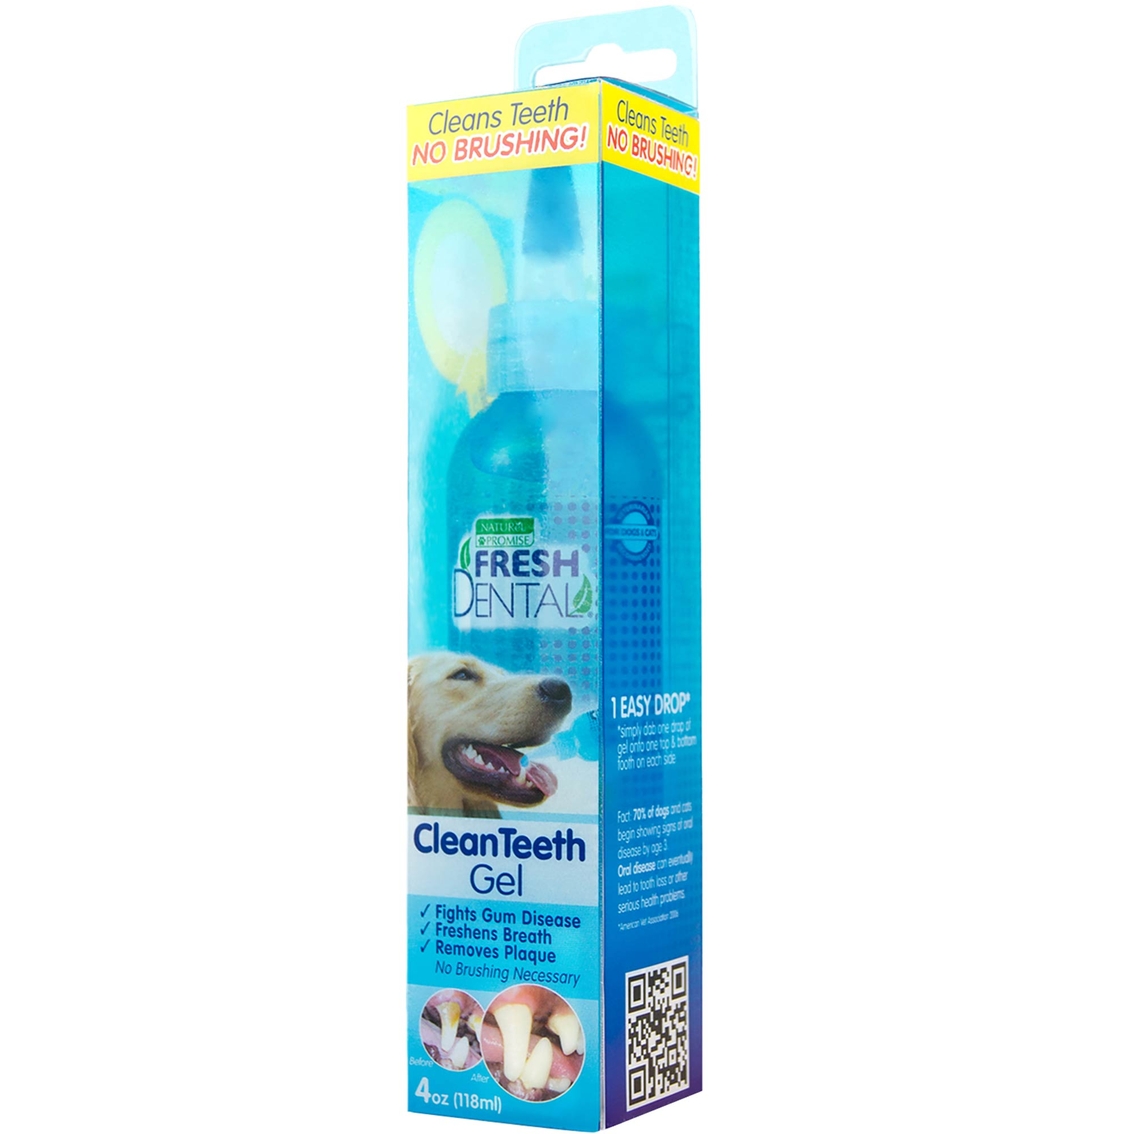 fresh dental brushing gel